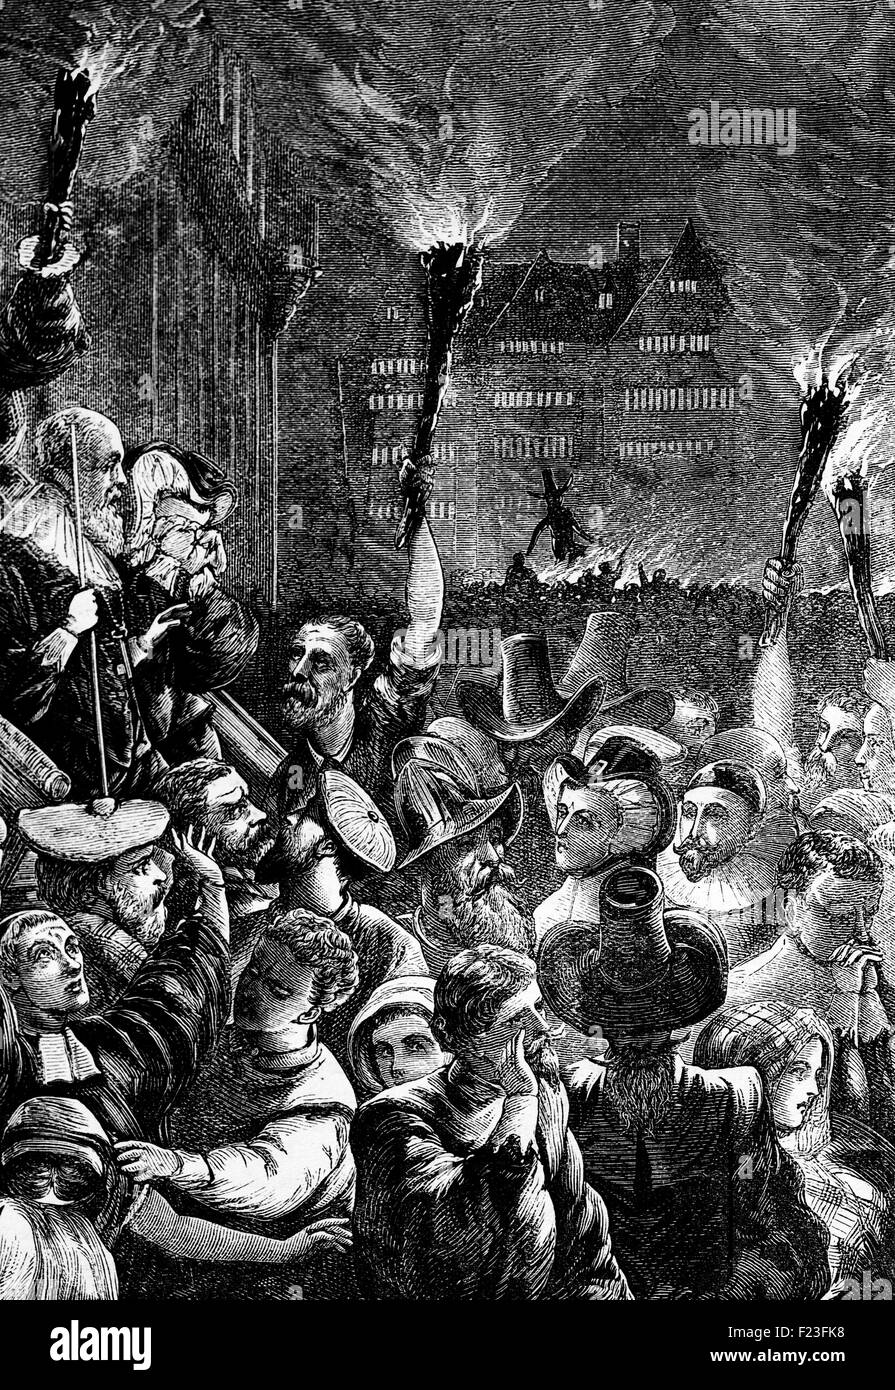 Guy Fawkes notte conosciuta come Notte dei falò in 1611. Si tratta di un evento annuale, principalmente in Inghilterra, per commemorare gli avvenimenti del 5 novembre 1605, quando Guy Fawkes, un membro della polvere da sparo Plot, fu arrestato mentre custodendo esplosivi i cospiratori avevano posto al di sotto della House of Lords. Foto Stock